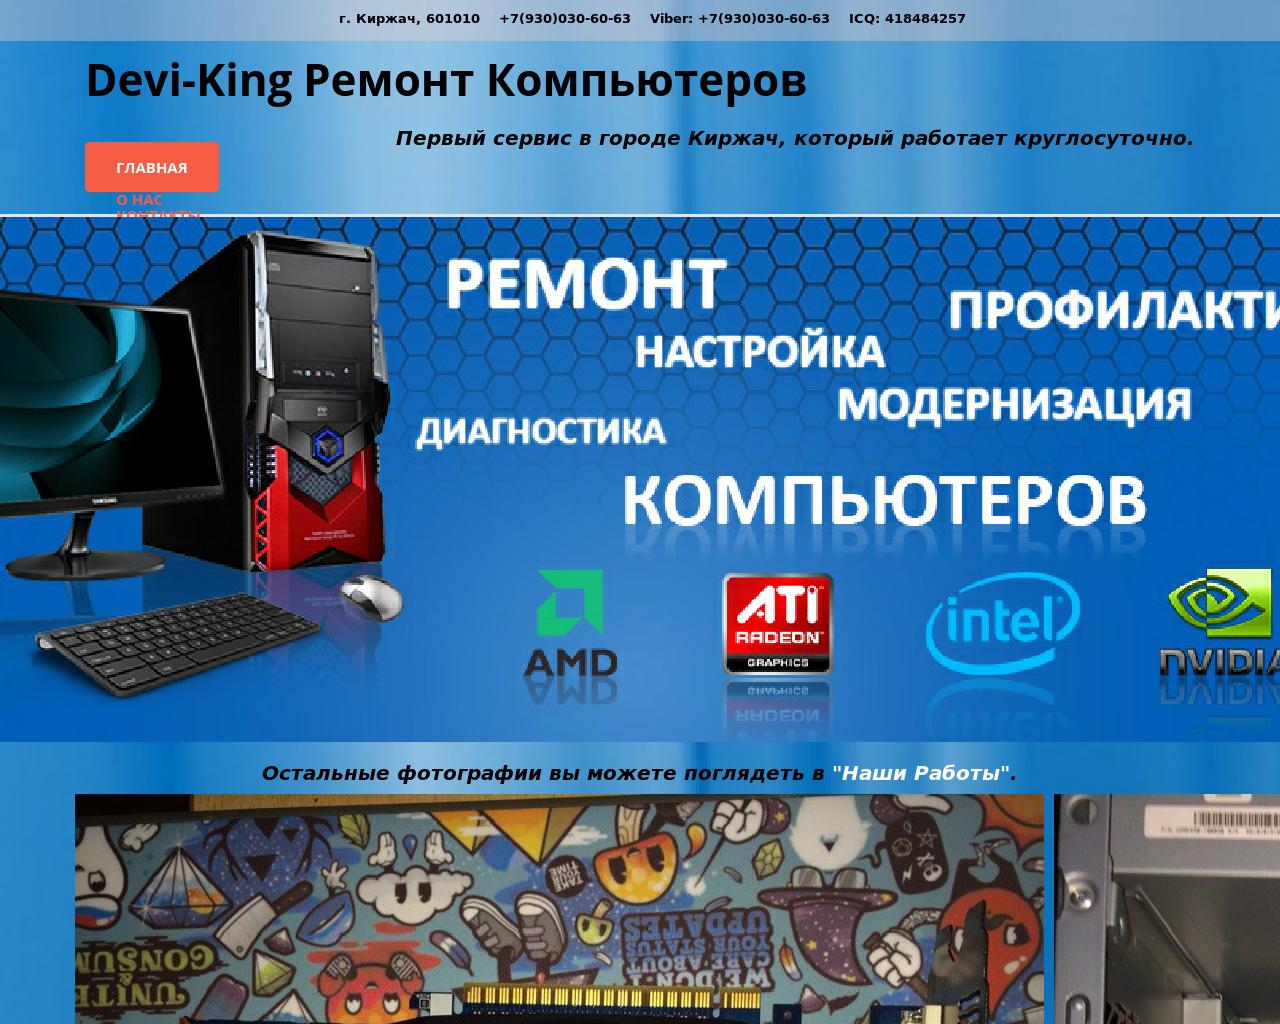 Изображение сайта devi-king.ru в разрешении 1280x1024